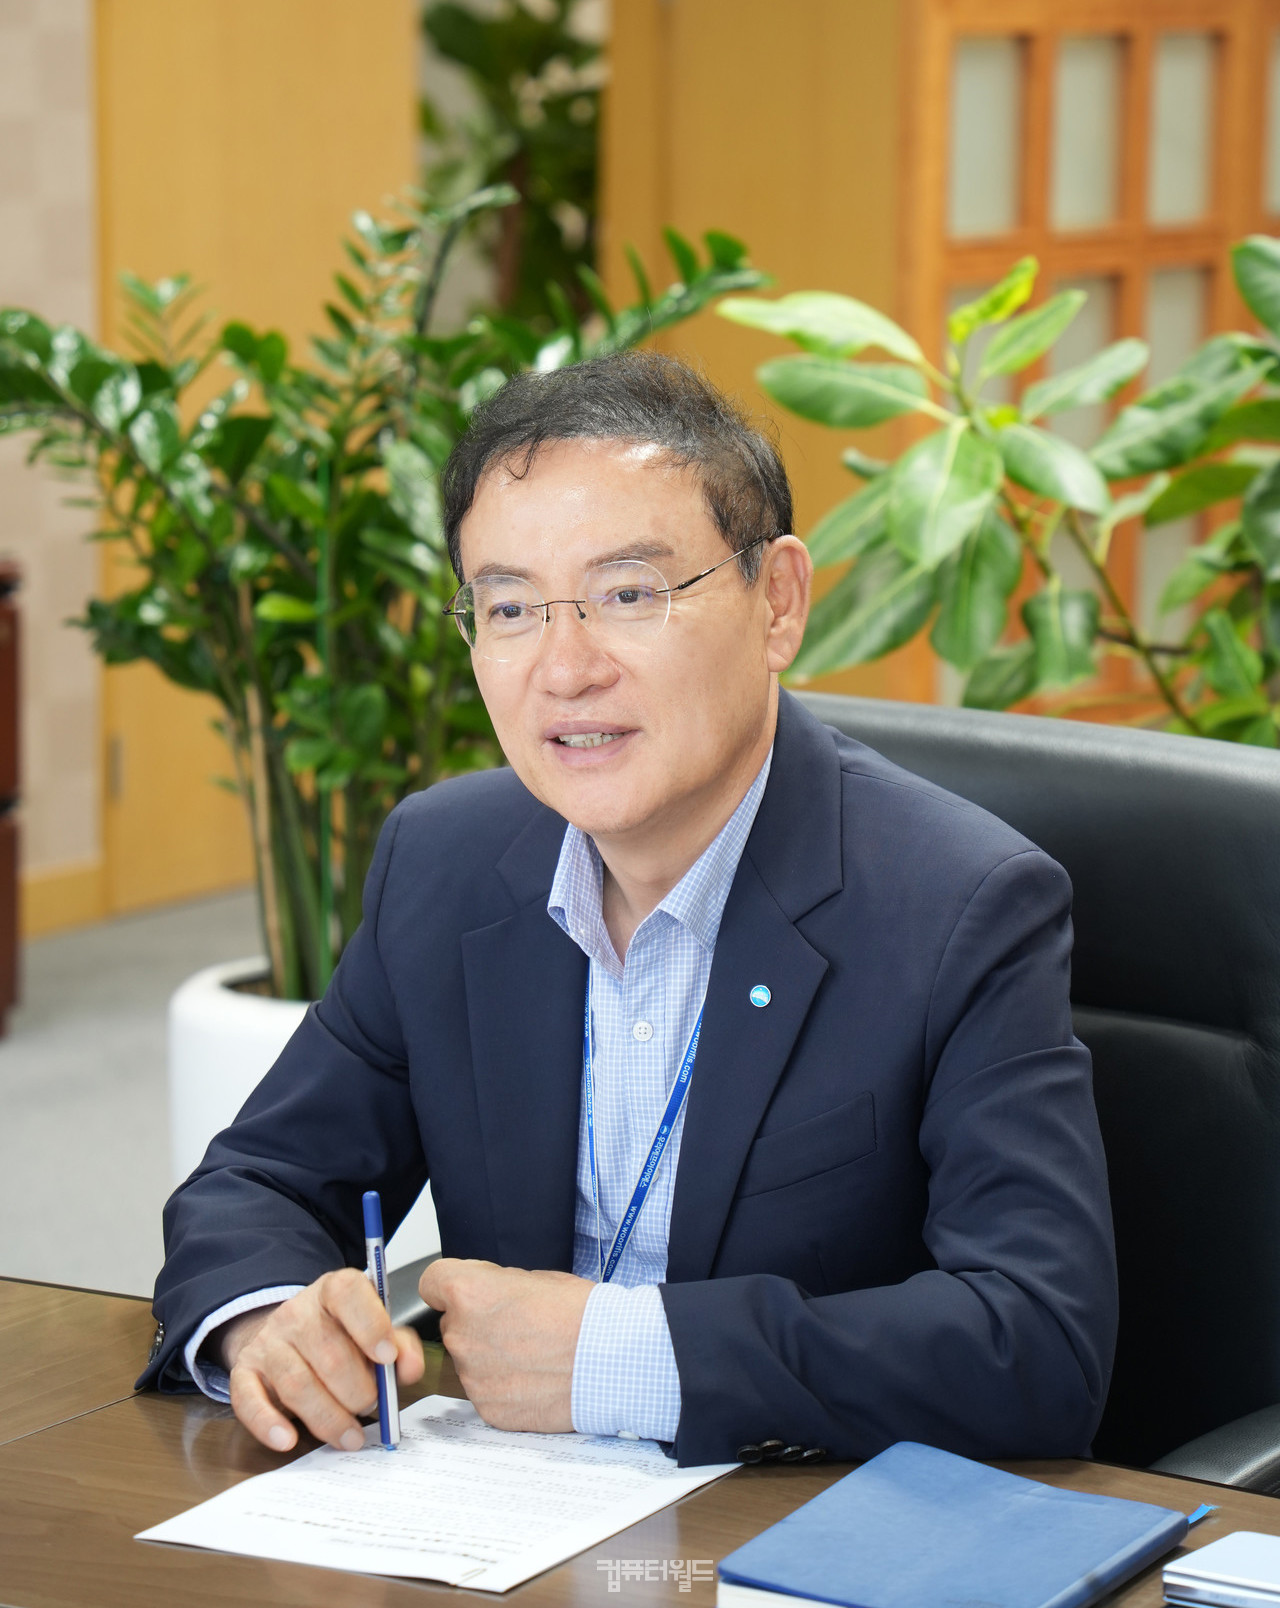 고정현 우리은행 IT그룹 부행장(은행CIO) / 우리에프아이에스 대표(CEO)